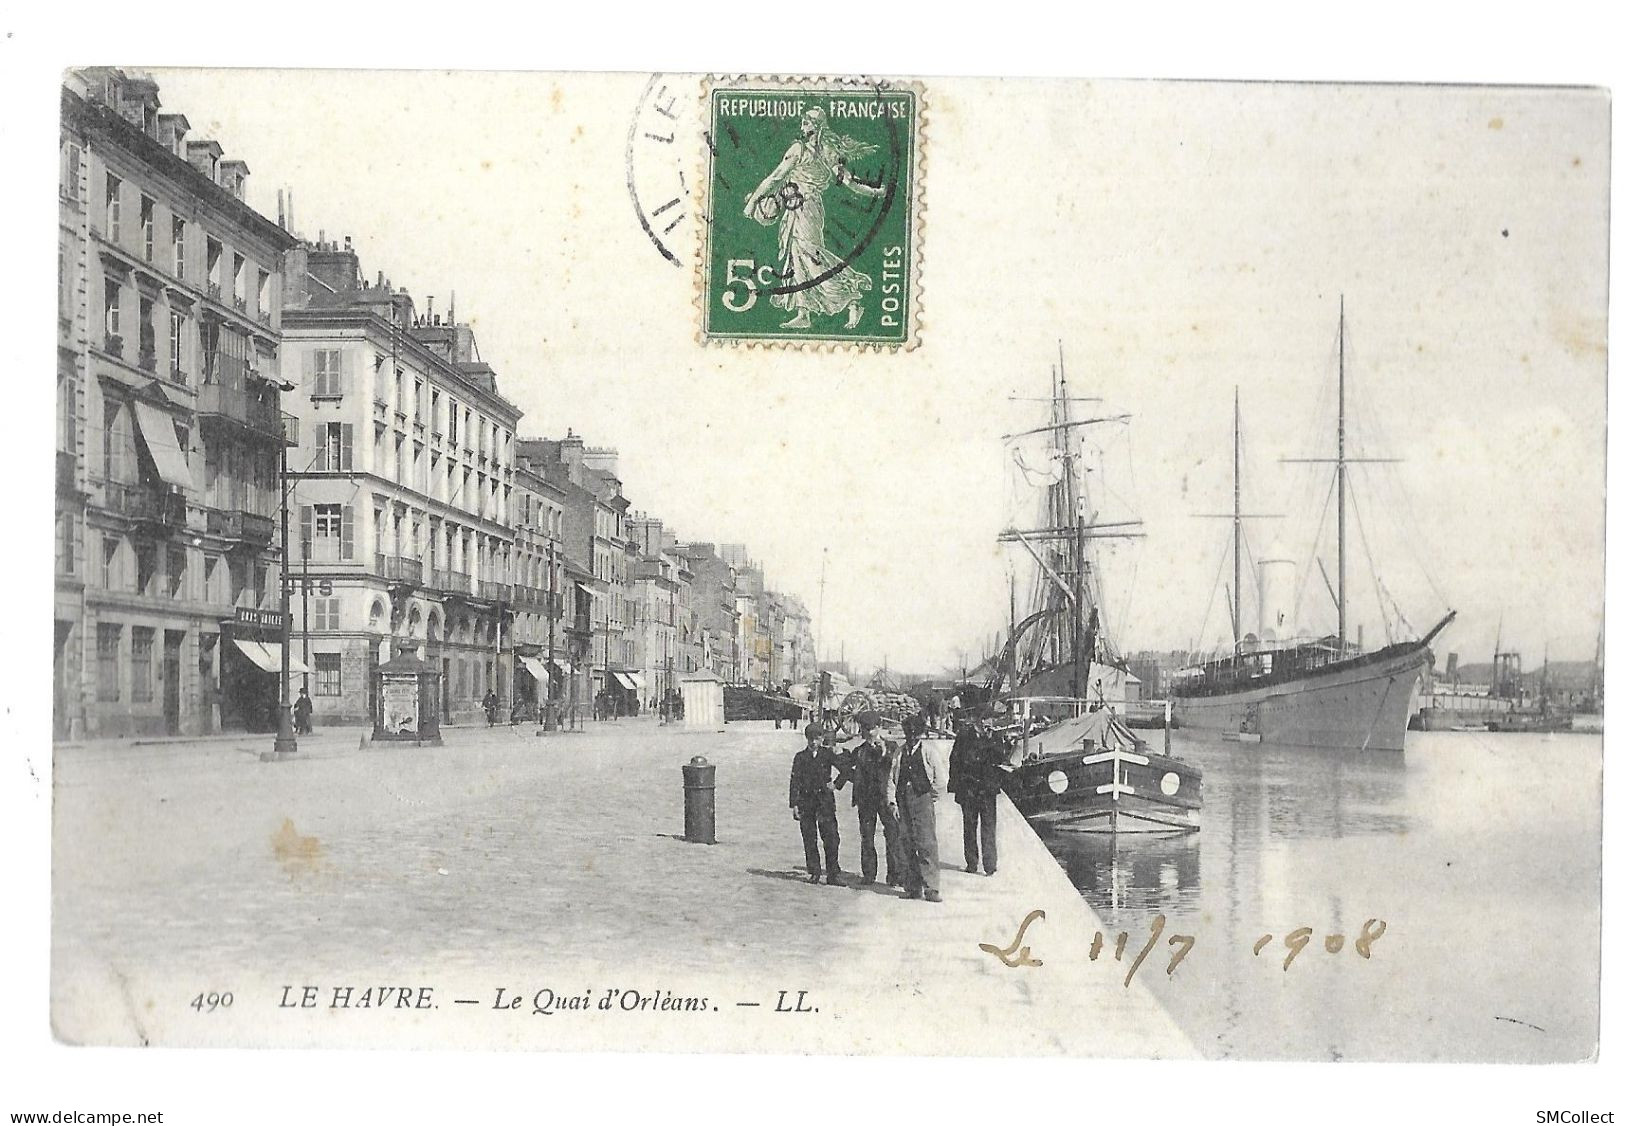 Le Havre, Le Quai D'Orléans (A5p34) - Harbour